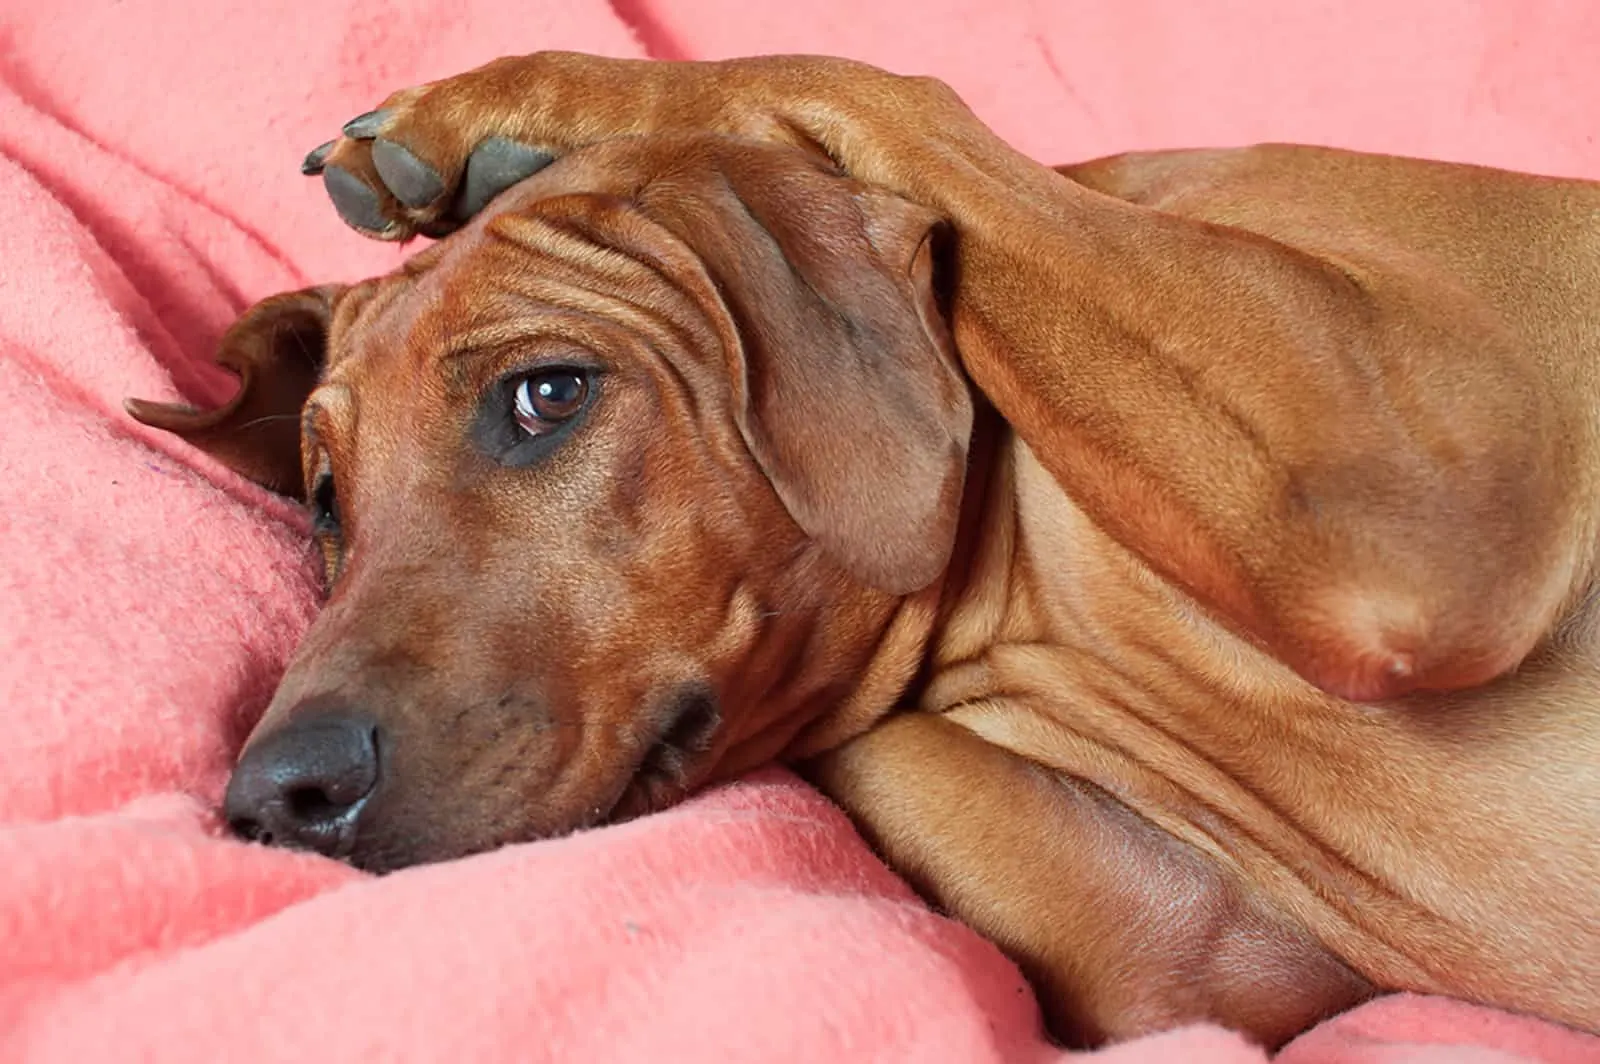  rhodesian ridgeback dog laying on pink blanket